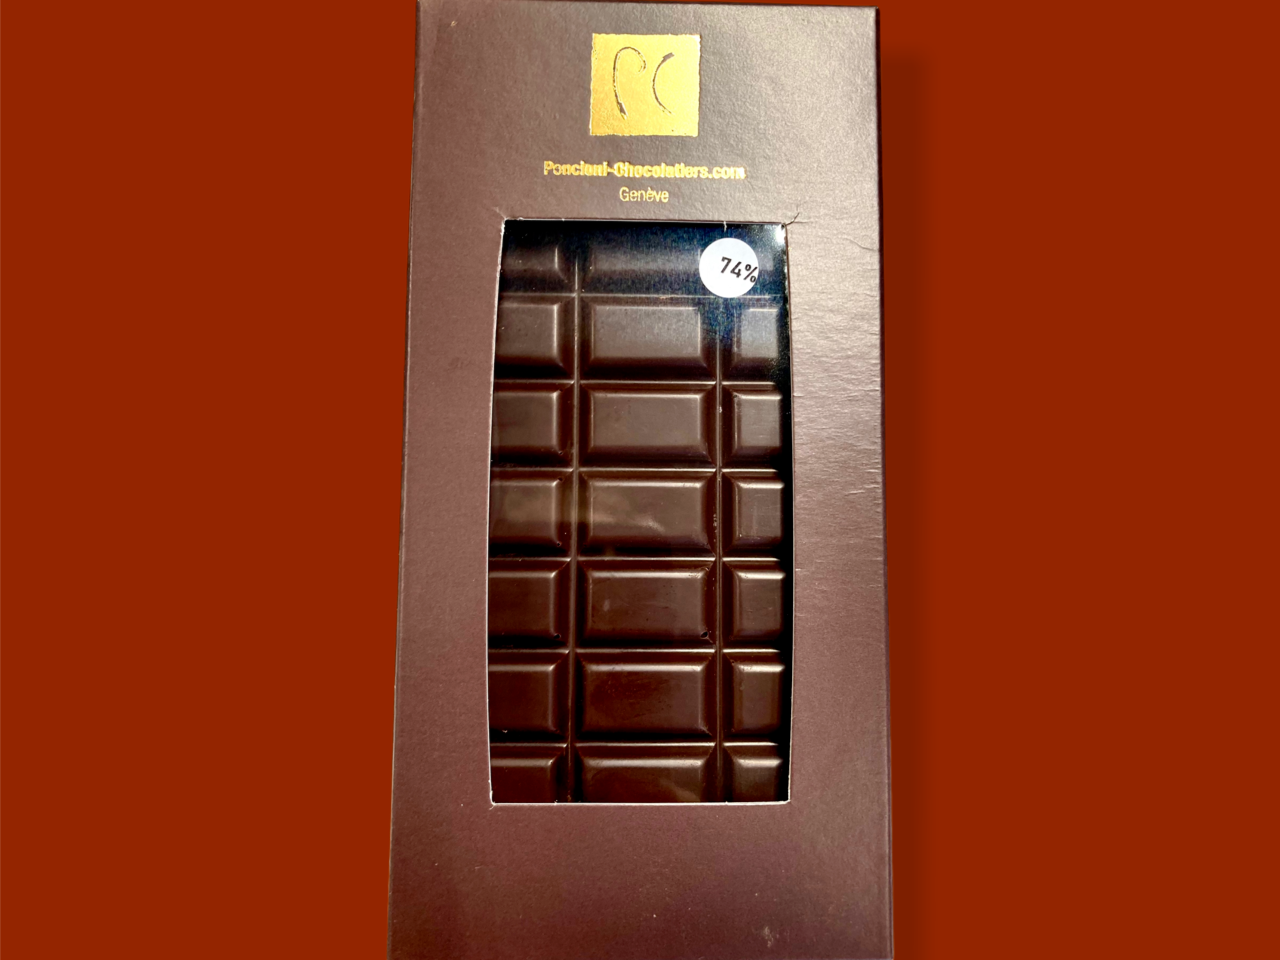 Tablette chocolat grand cru République Dominicaine bio 74% 80g, produit artisanal en vente directe en Suisse